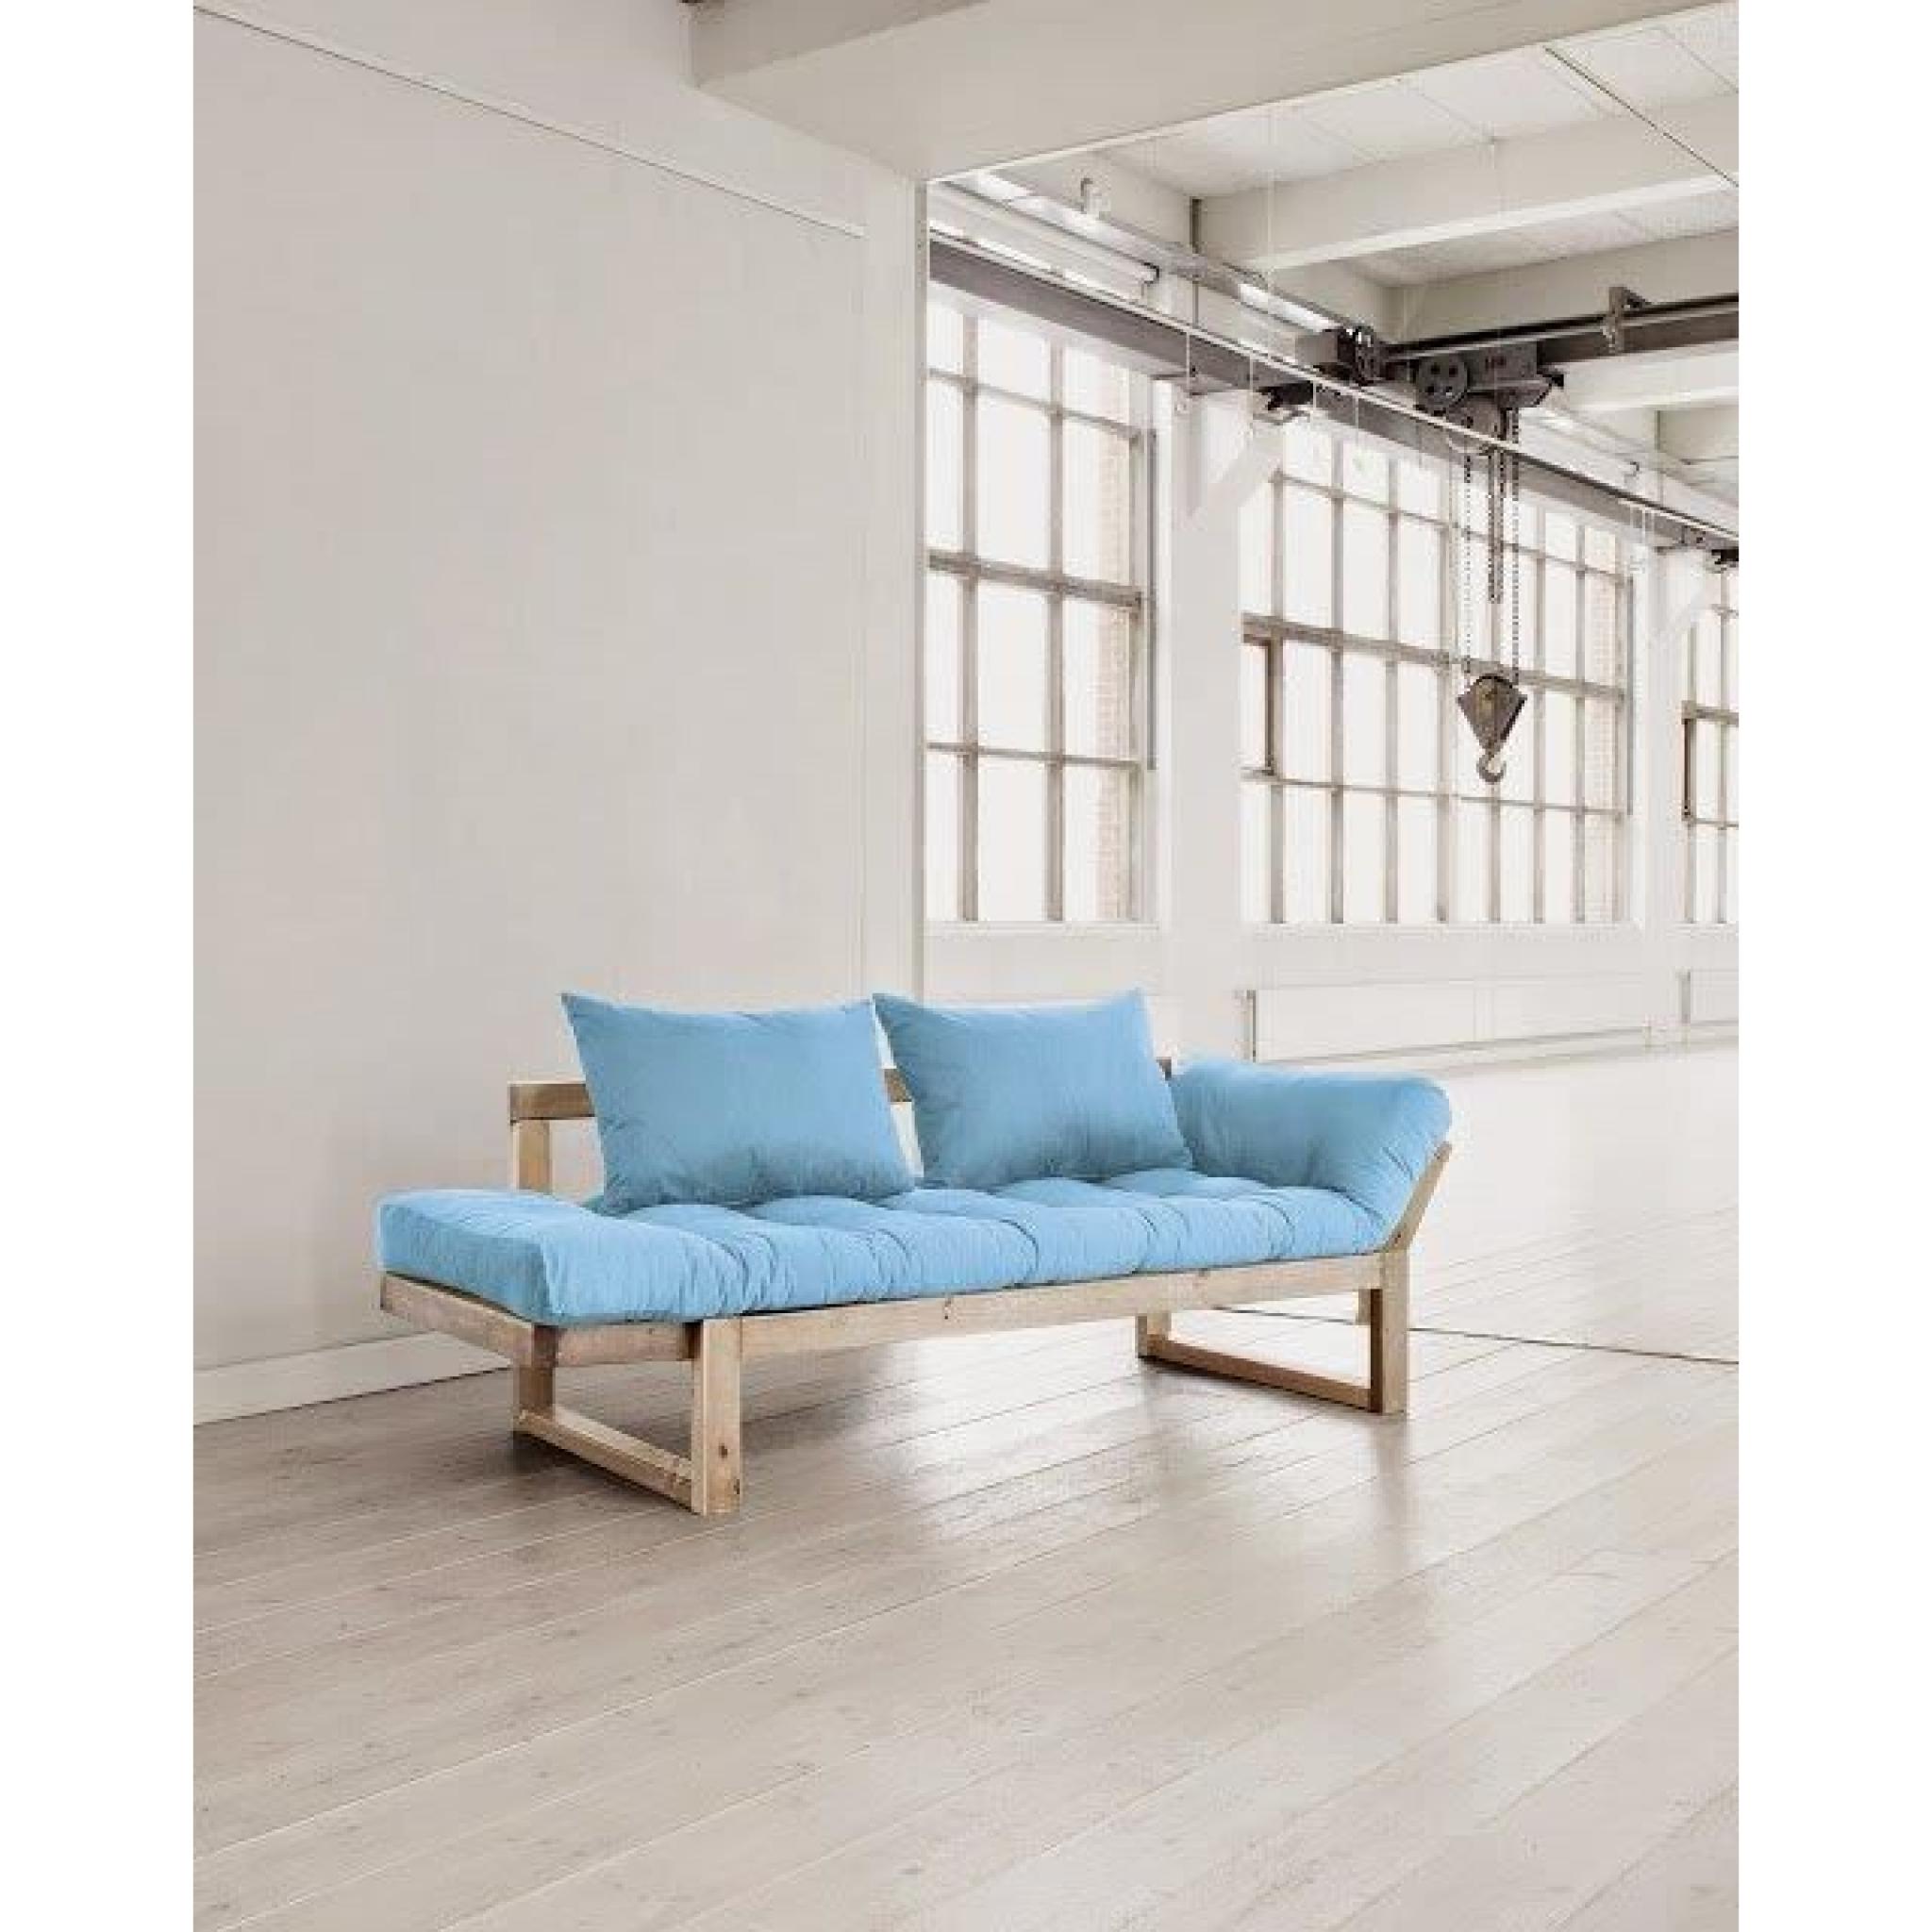 Banquette méridienne style scandinave futon celeste EDGE couchage 75*200cm